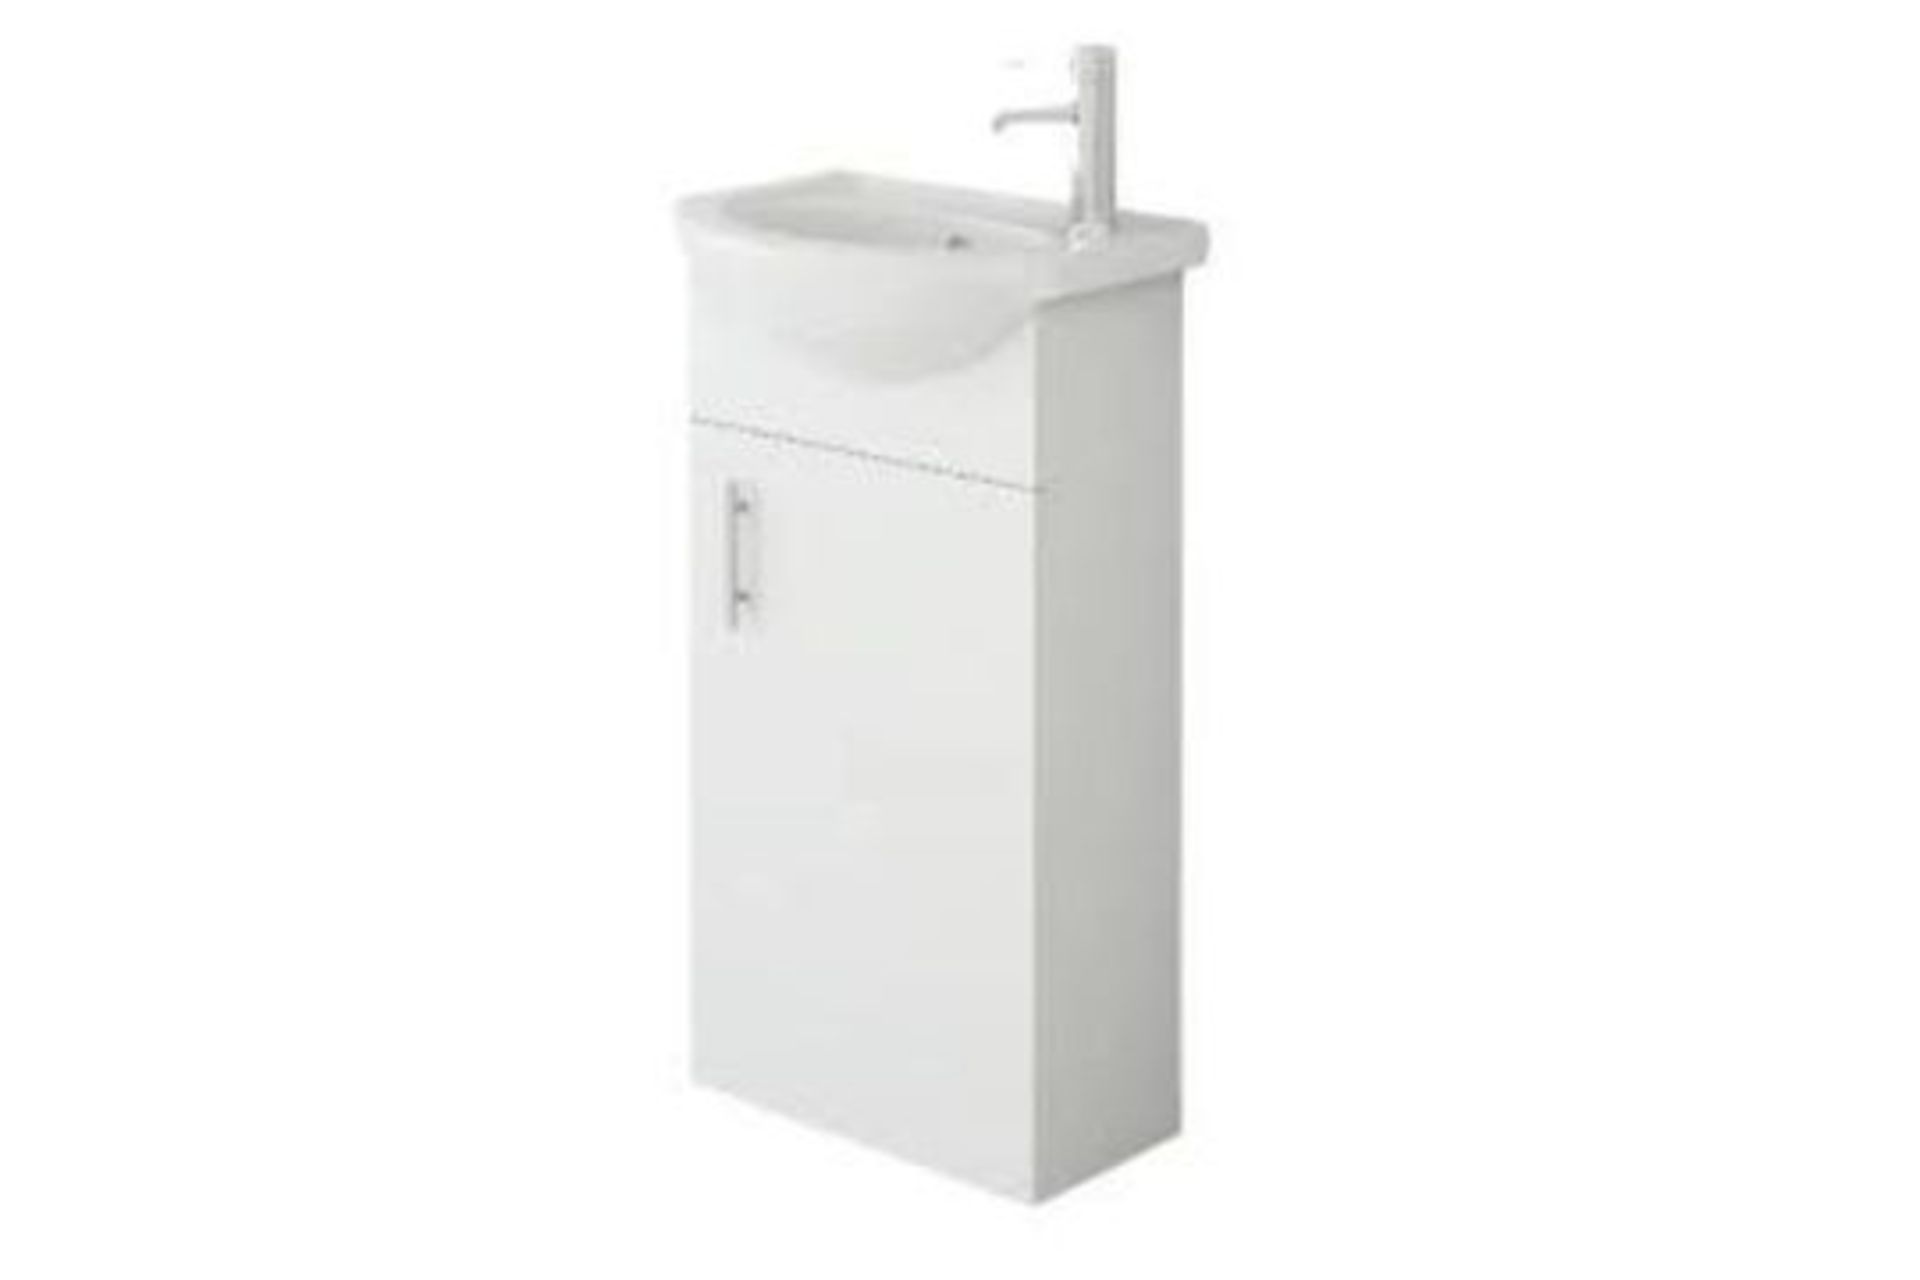 Veebath Bathroom Cloakroom Vanity Basin Cabinet Unit. - ER45